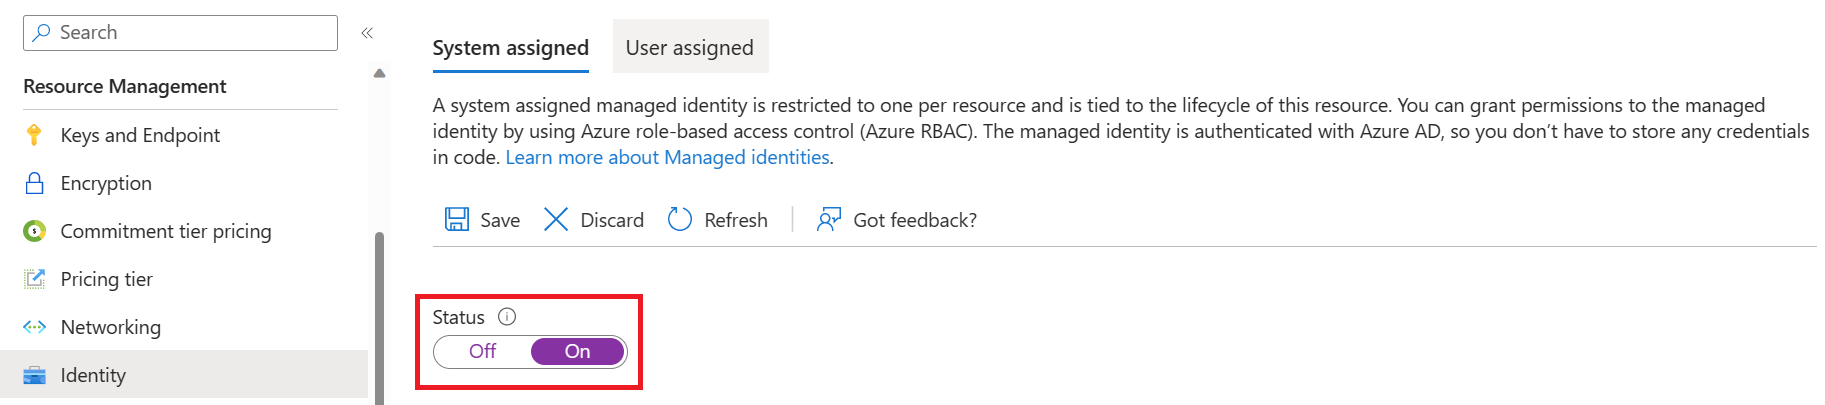 螢幕快照：Azure 入口網站 中的資源管理身分識別索引標籤。